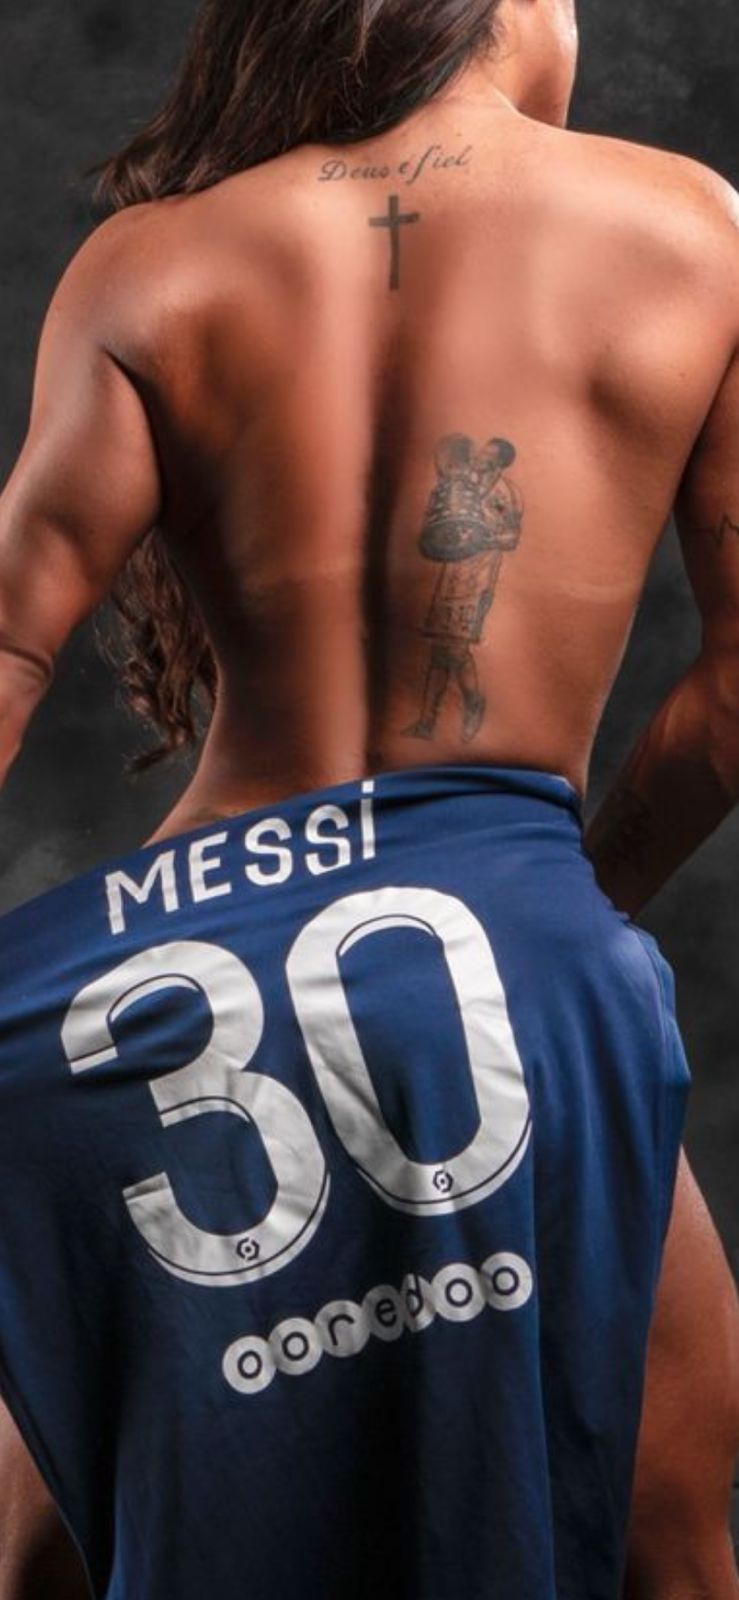 Photos n°4 : Suzy Cortez Got Some New Messi Ink!